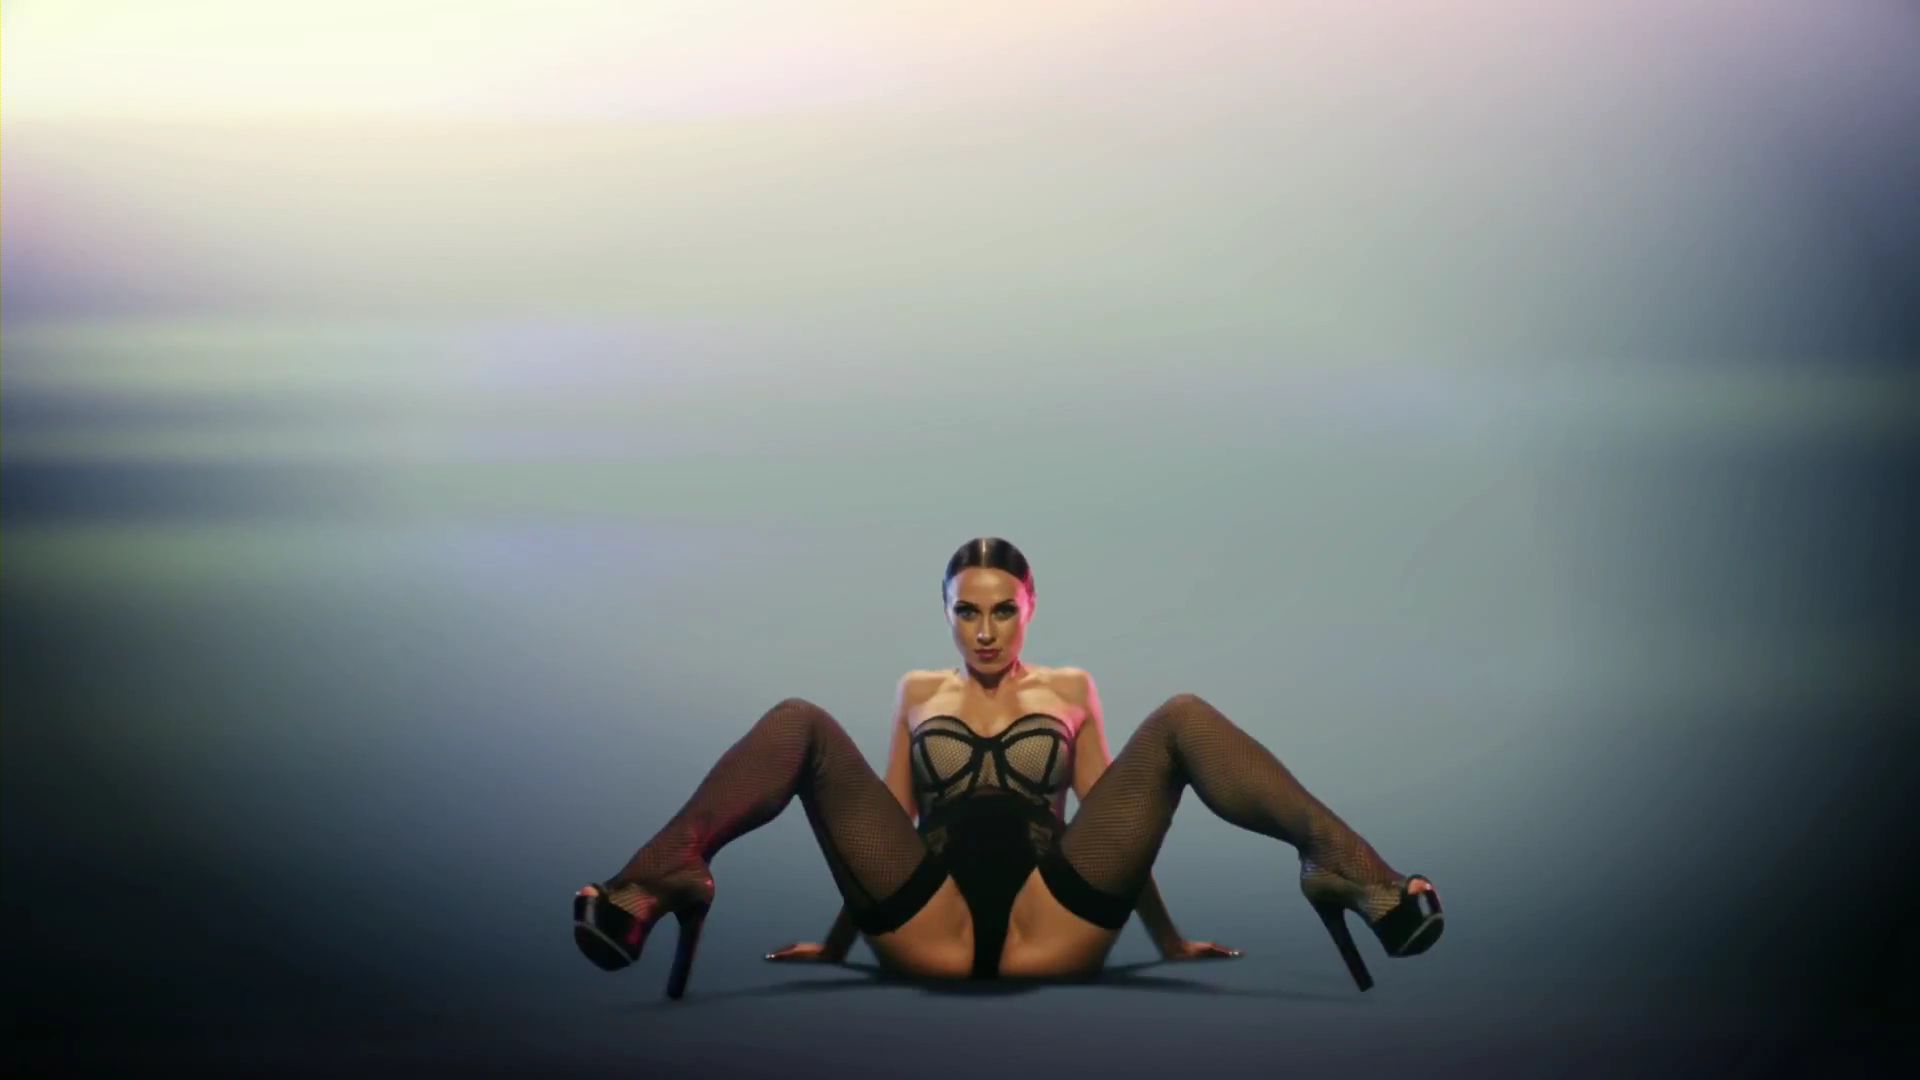 Stripper music video pic